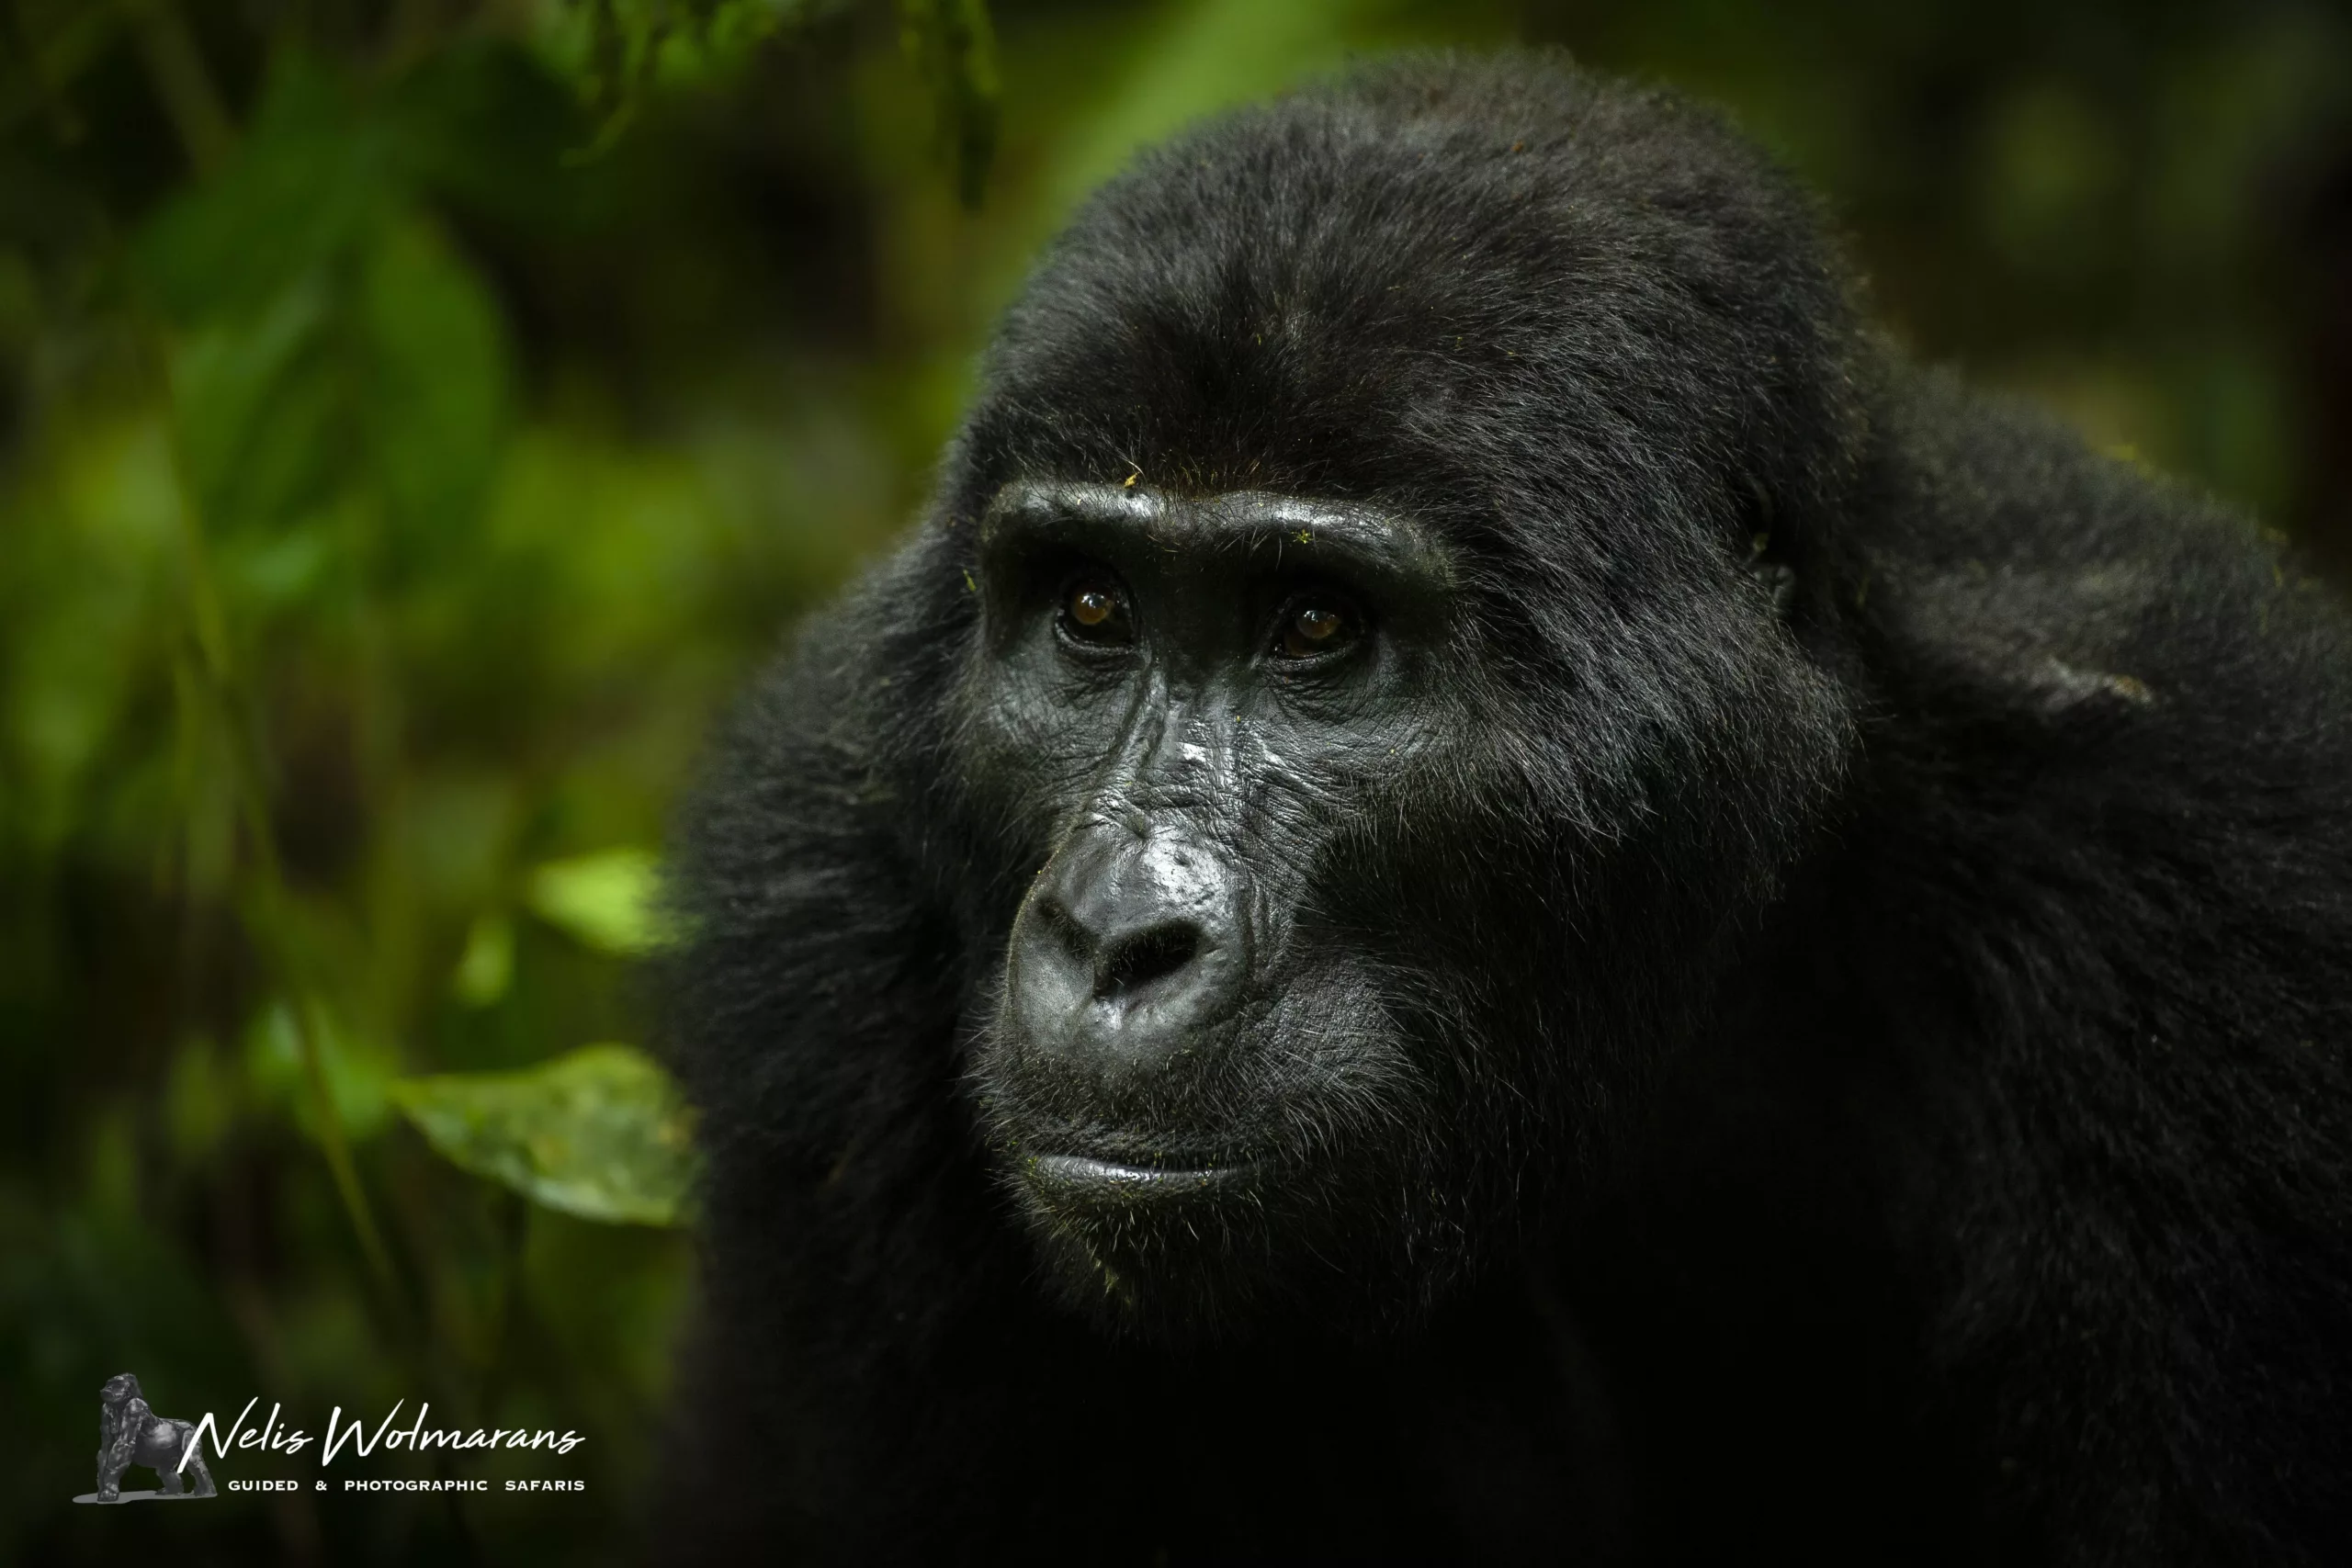 Uganda primate safari nelis wolmarans x pangolin the gorilla stare